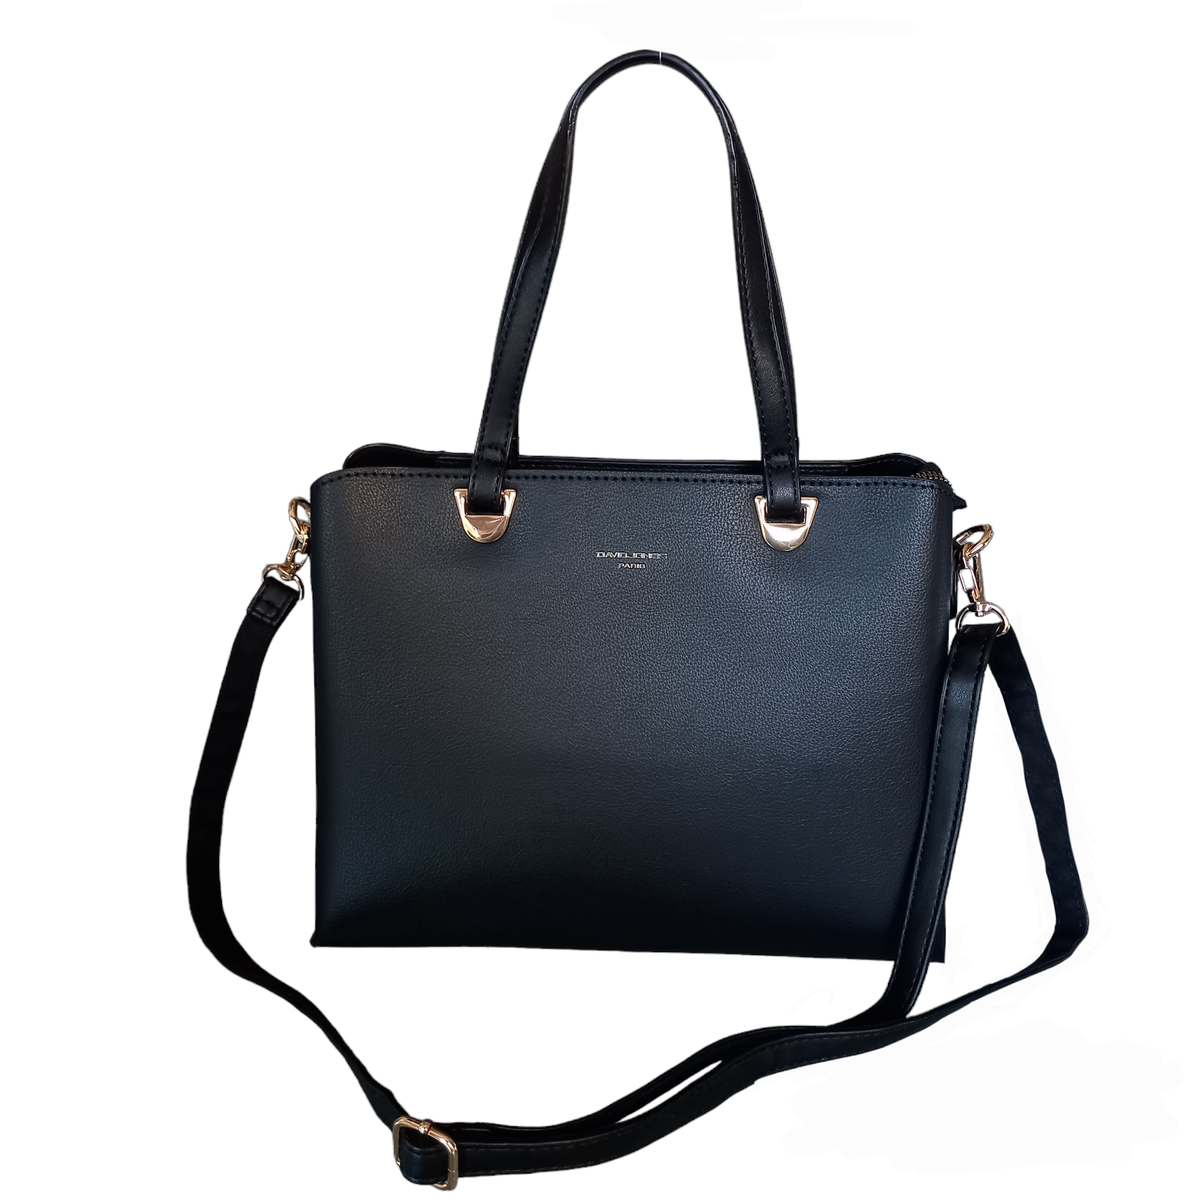 David Jones Ladies Tote Handbag with Adjustable Strap | Shop Today. Get ...